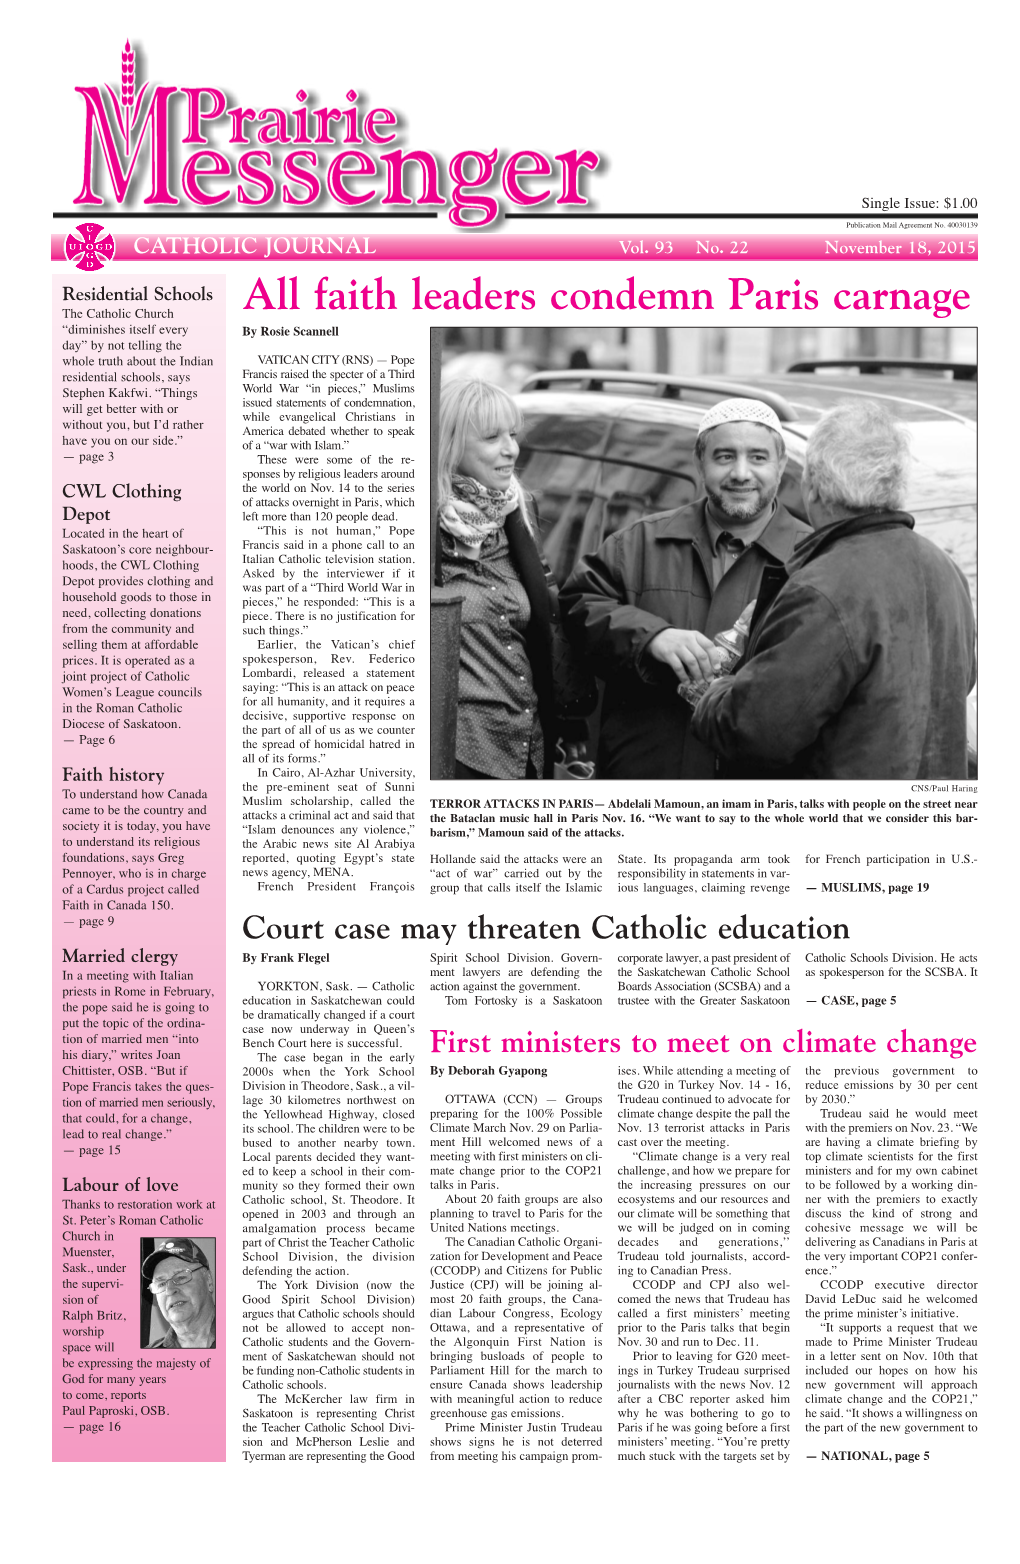 All Faith Leaders Condemn Paris Carnage